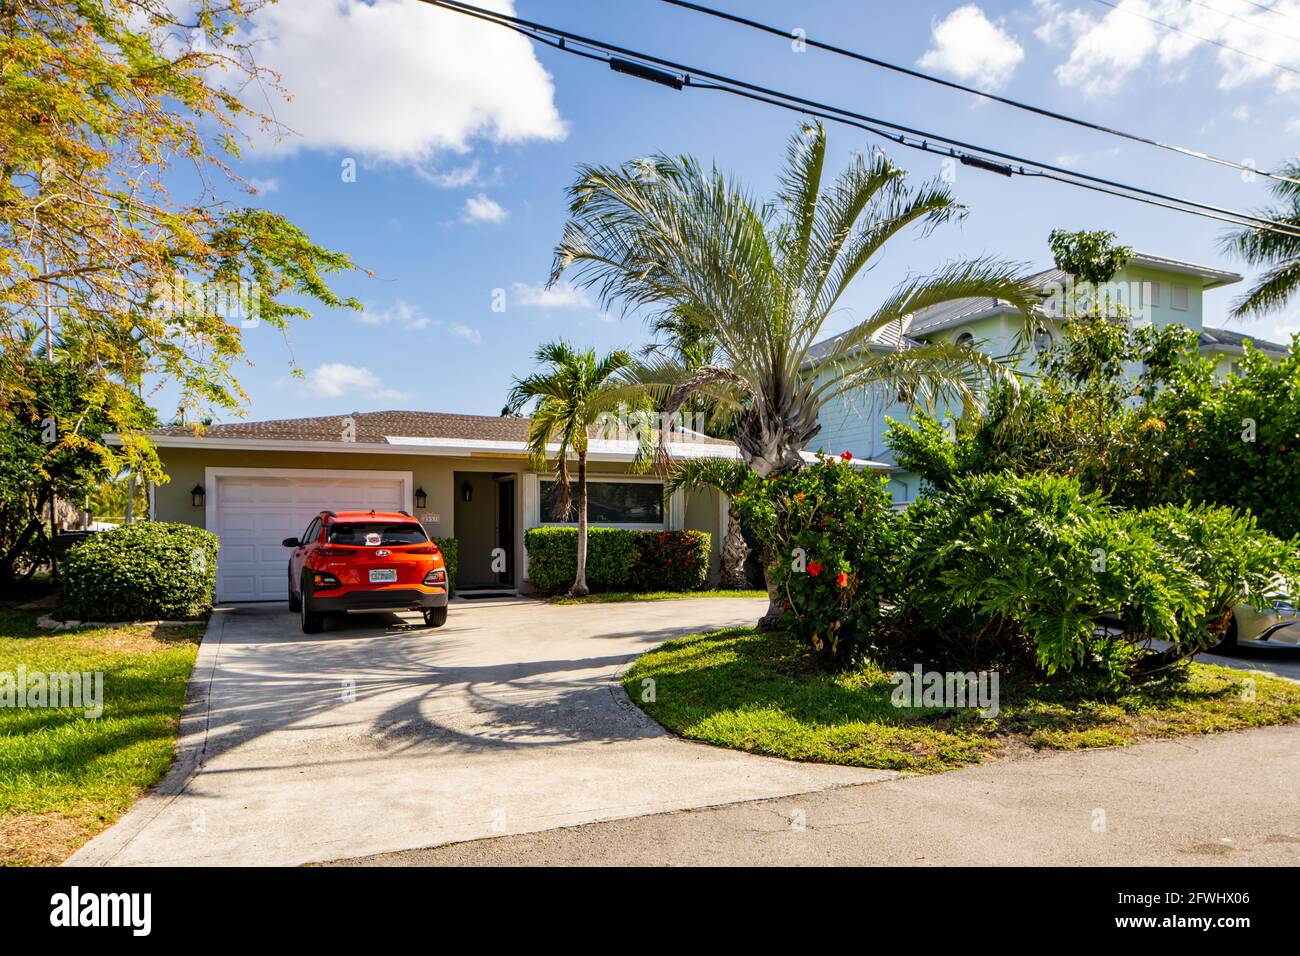 Pompano Beach, FL, USA - May 22, 2021: Single family house in Pompano Beach Florida USA Stock Photo